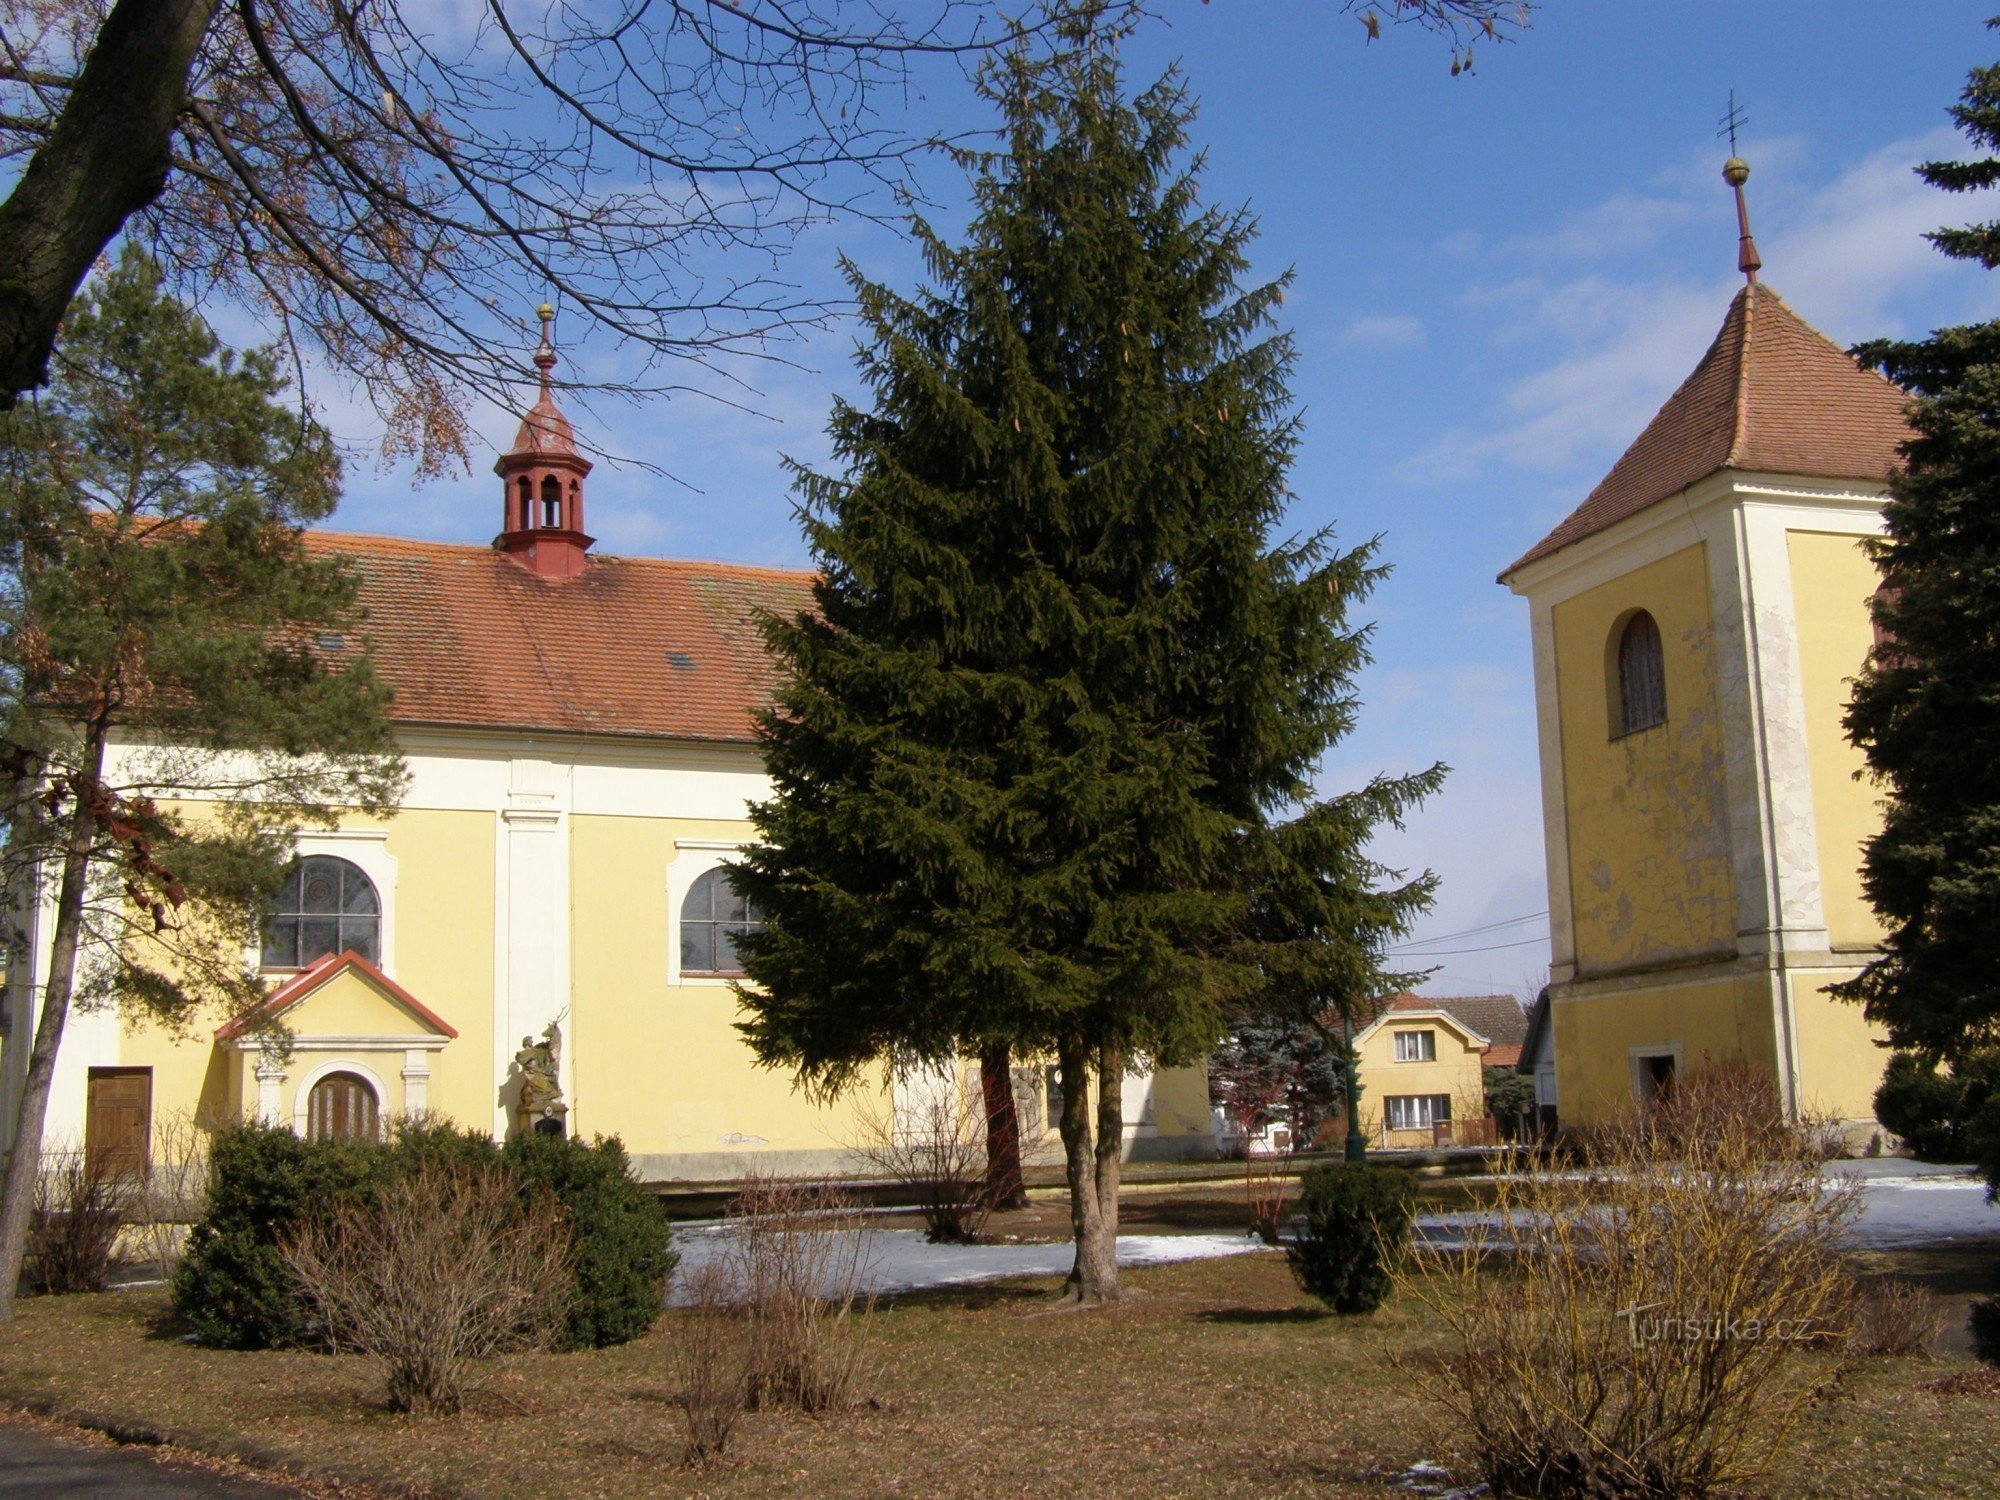 Lovčice - crkva sv. Bartolomeja sa zvonikom